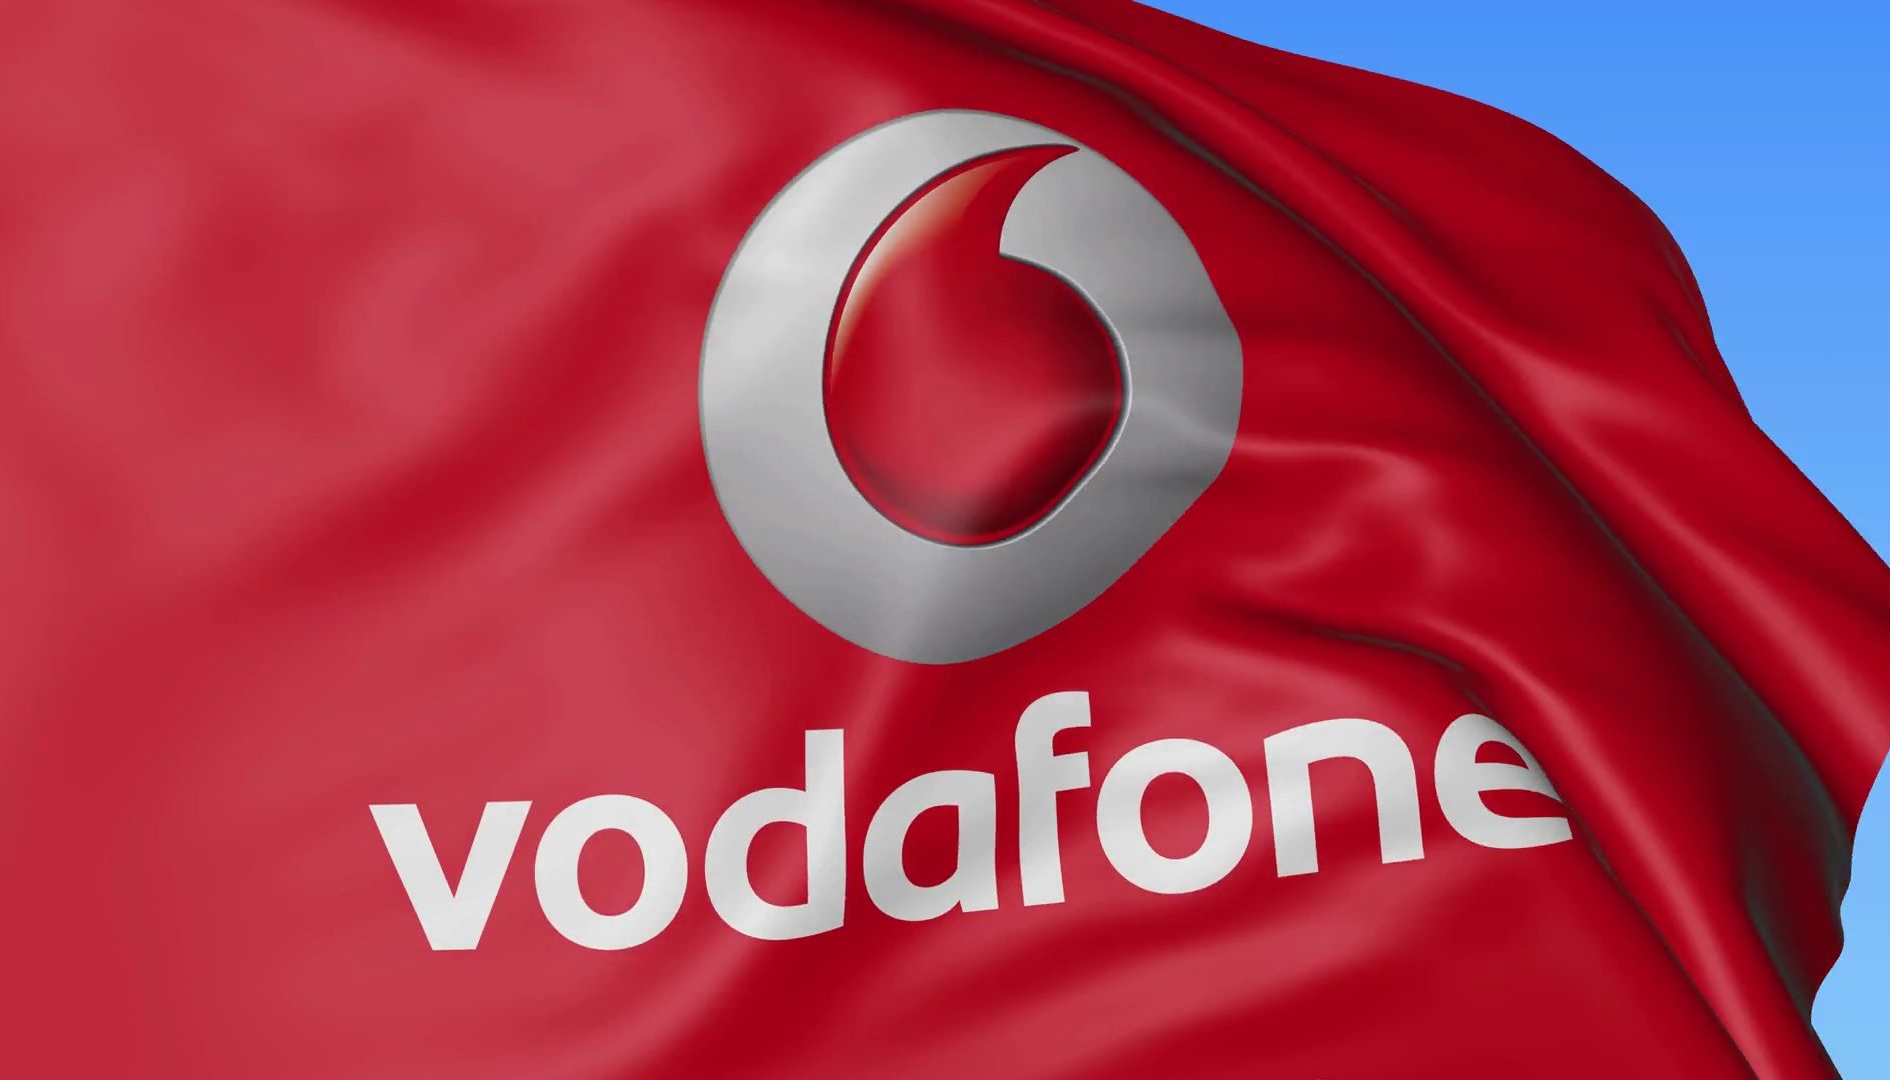 Vodafone da oggi rimodulazioni con aumenti fino a 4,98 euro